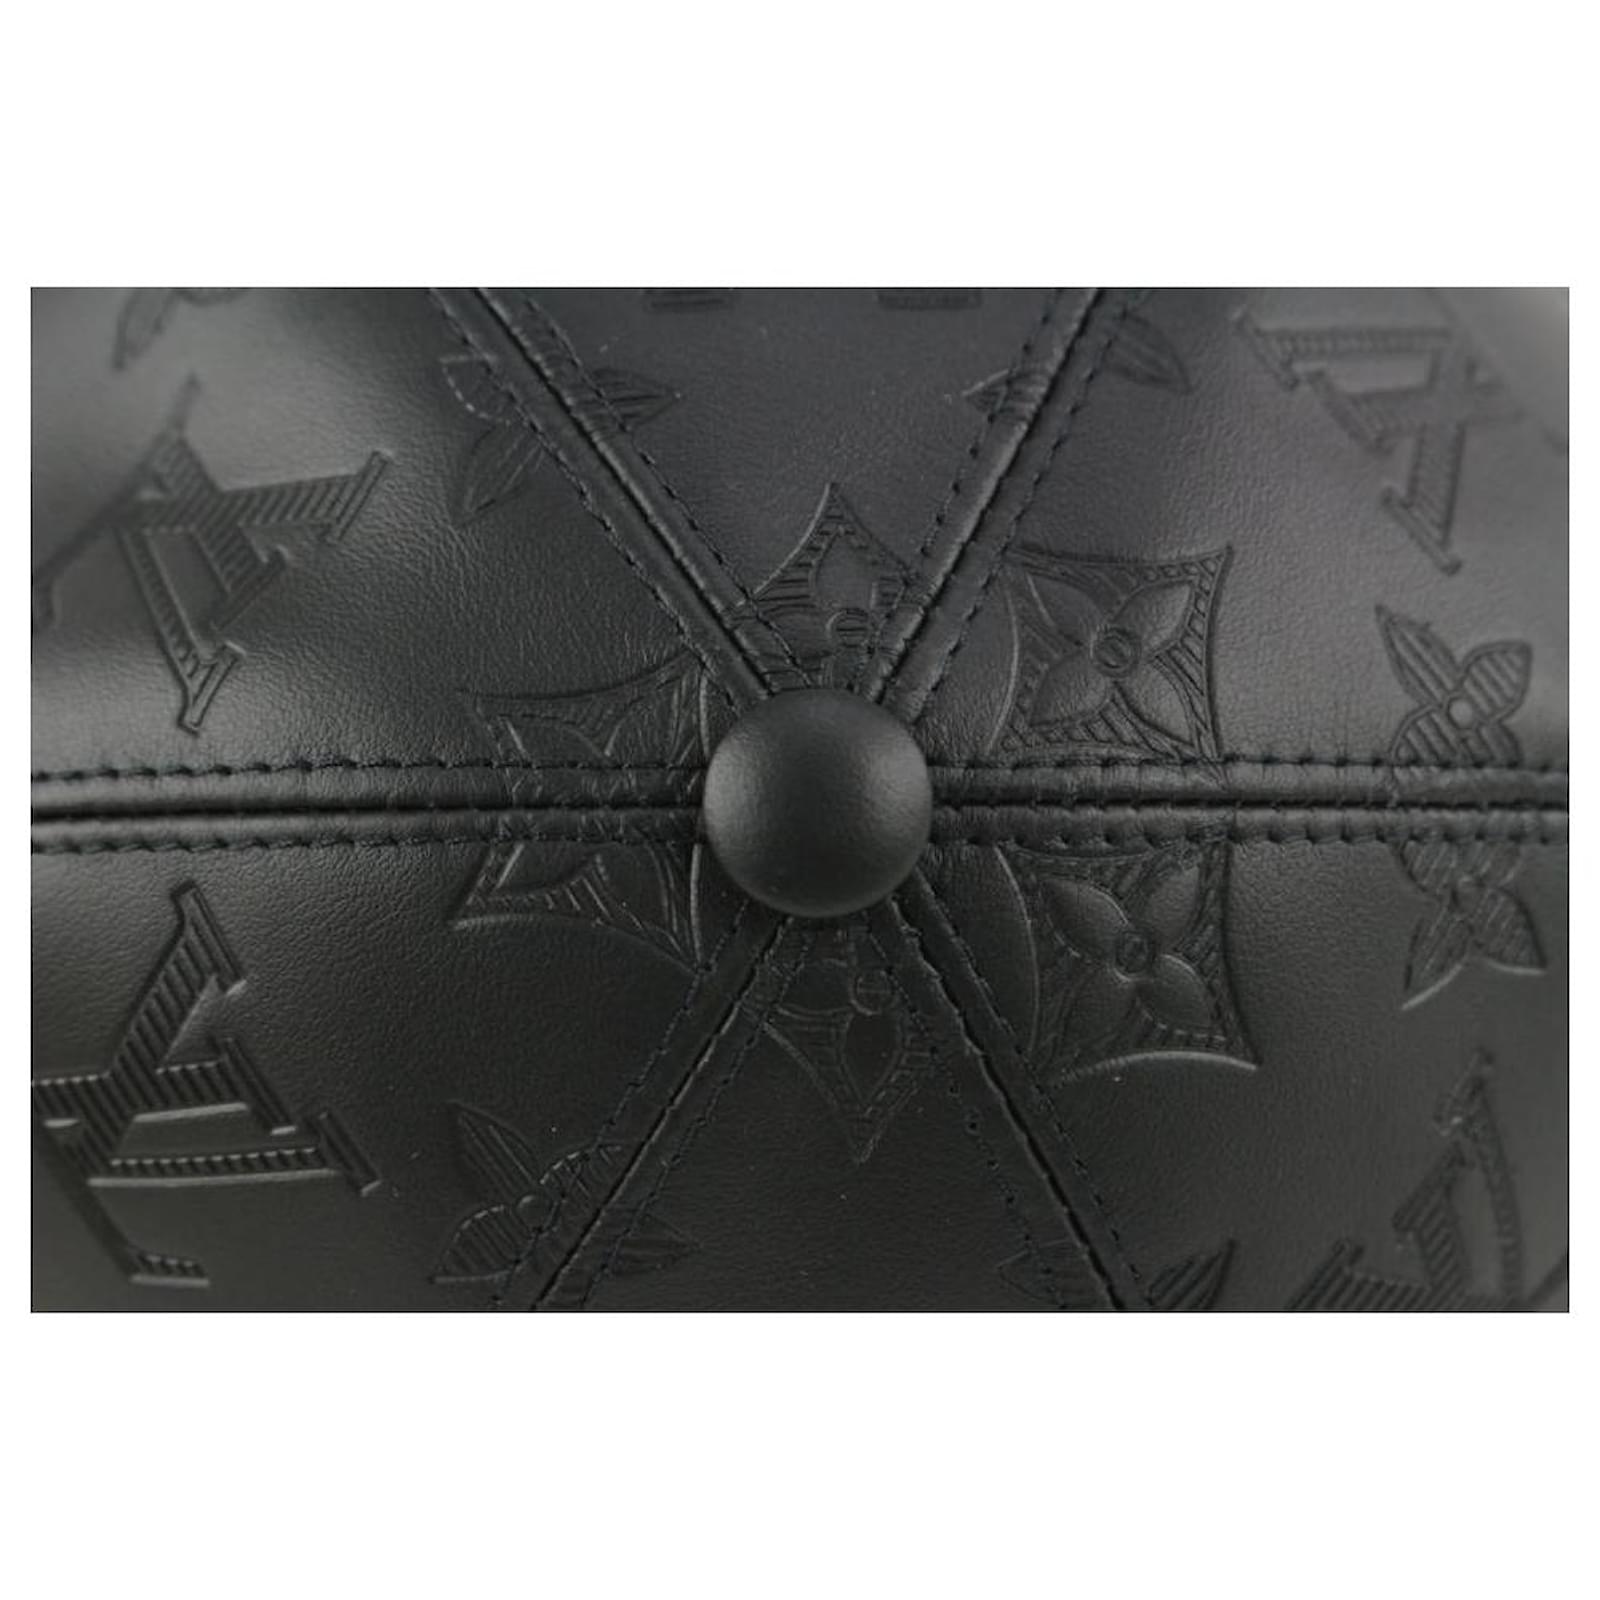 Shop Louis Vuitton Monogram shadow cap (M76580) by